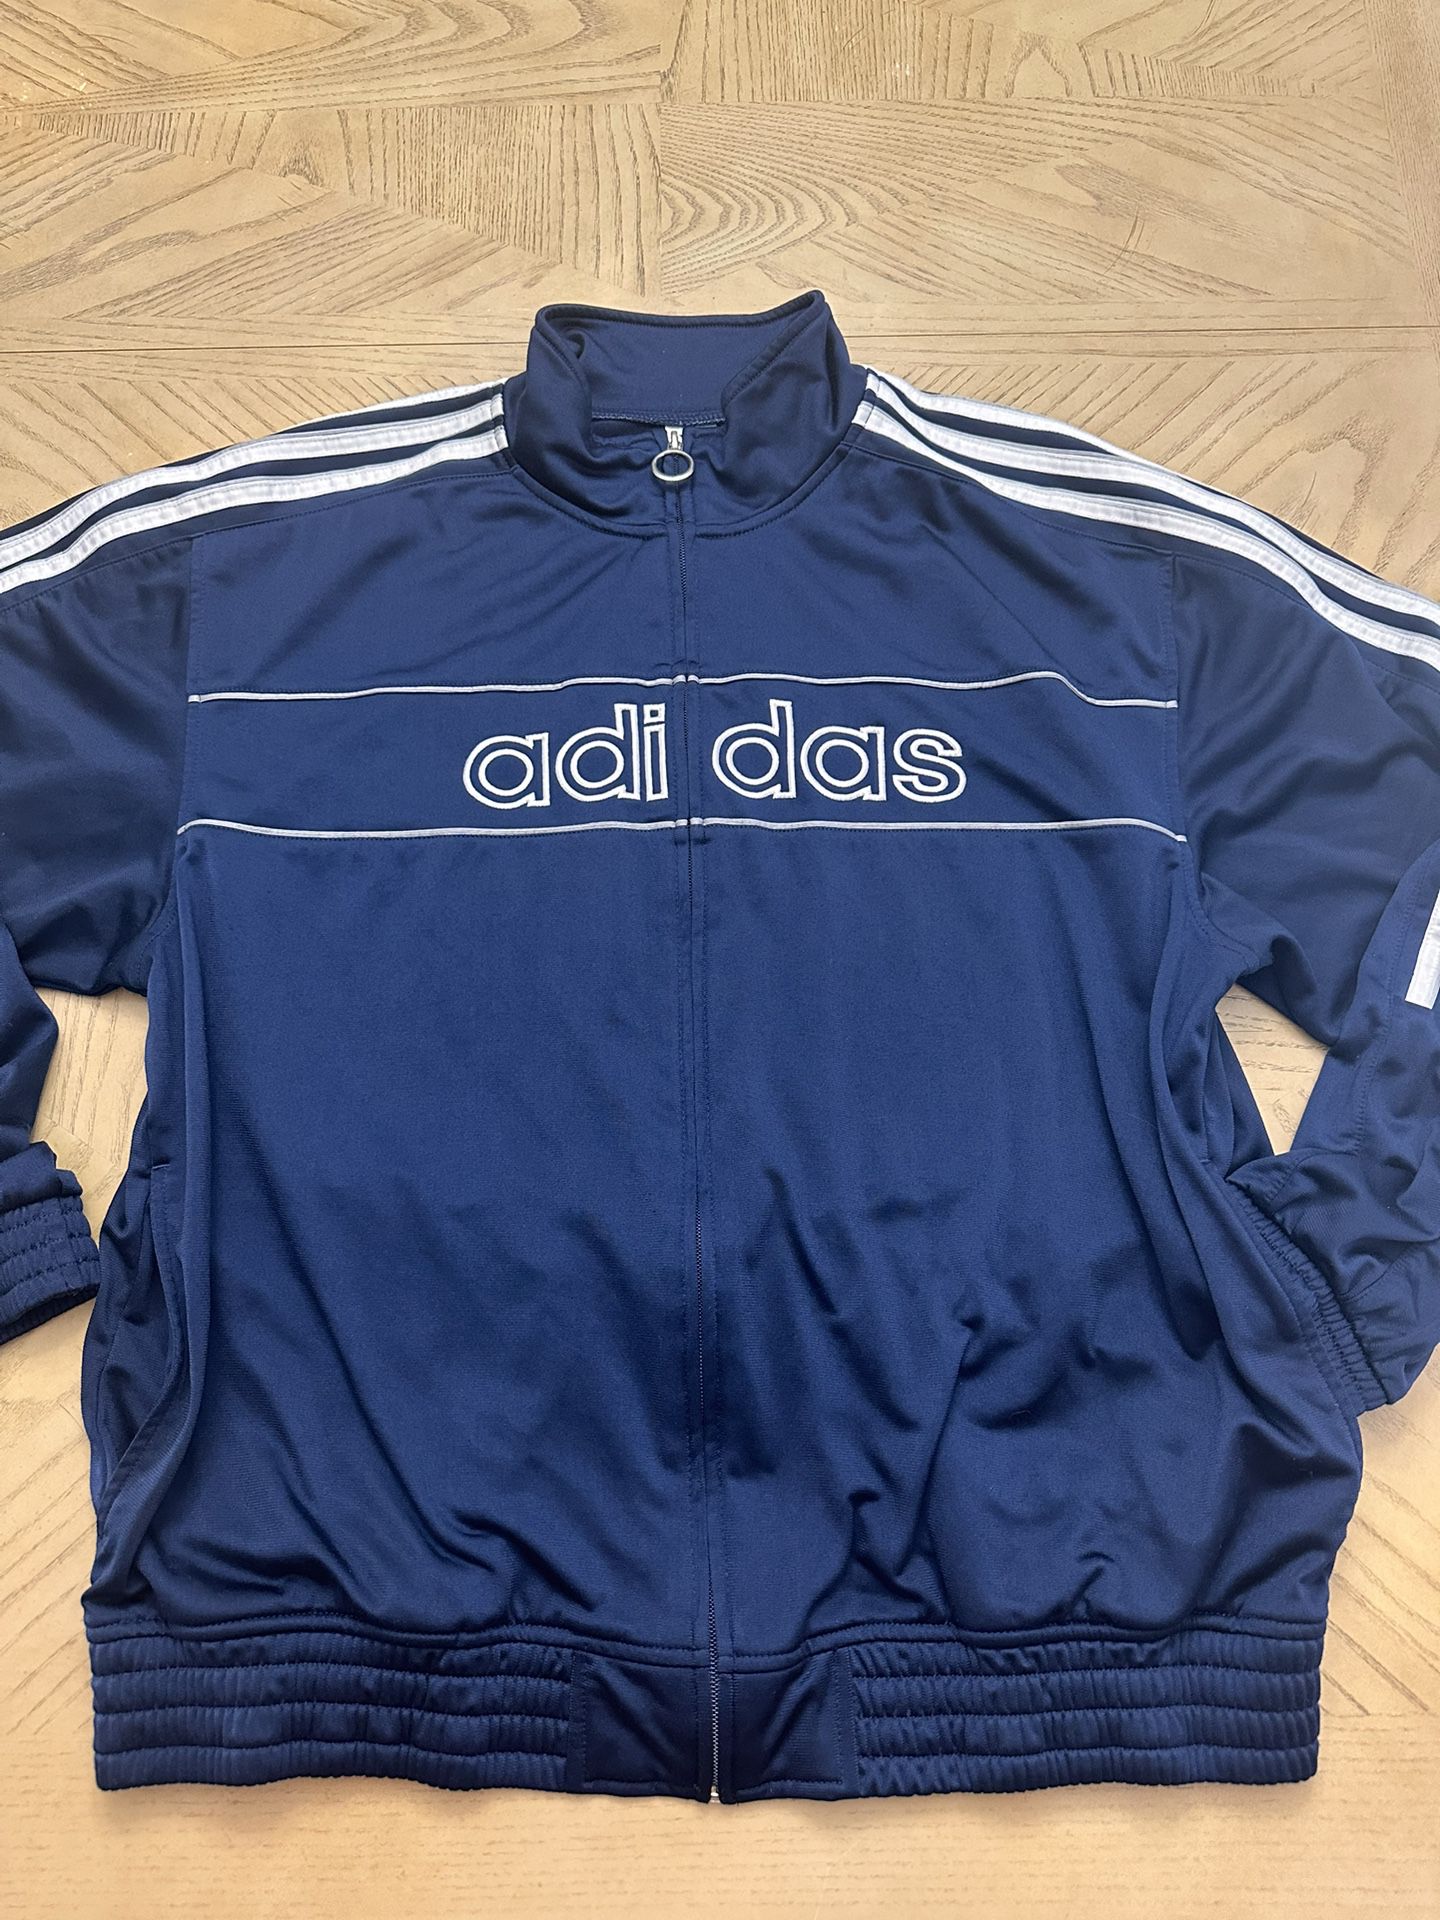 Adidas Blue & White Zip Up Warm Up Jacket Men's Large